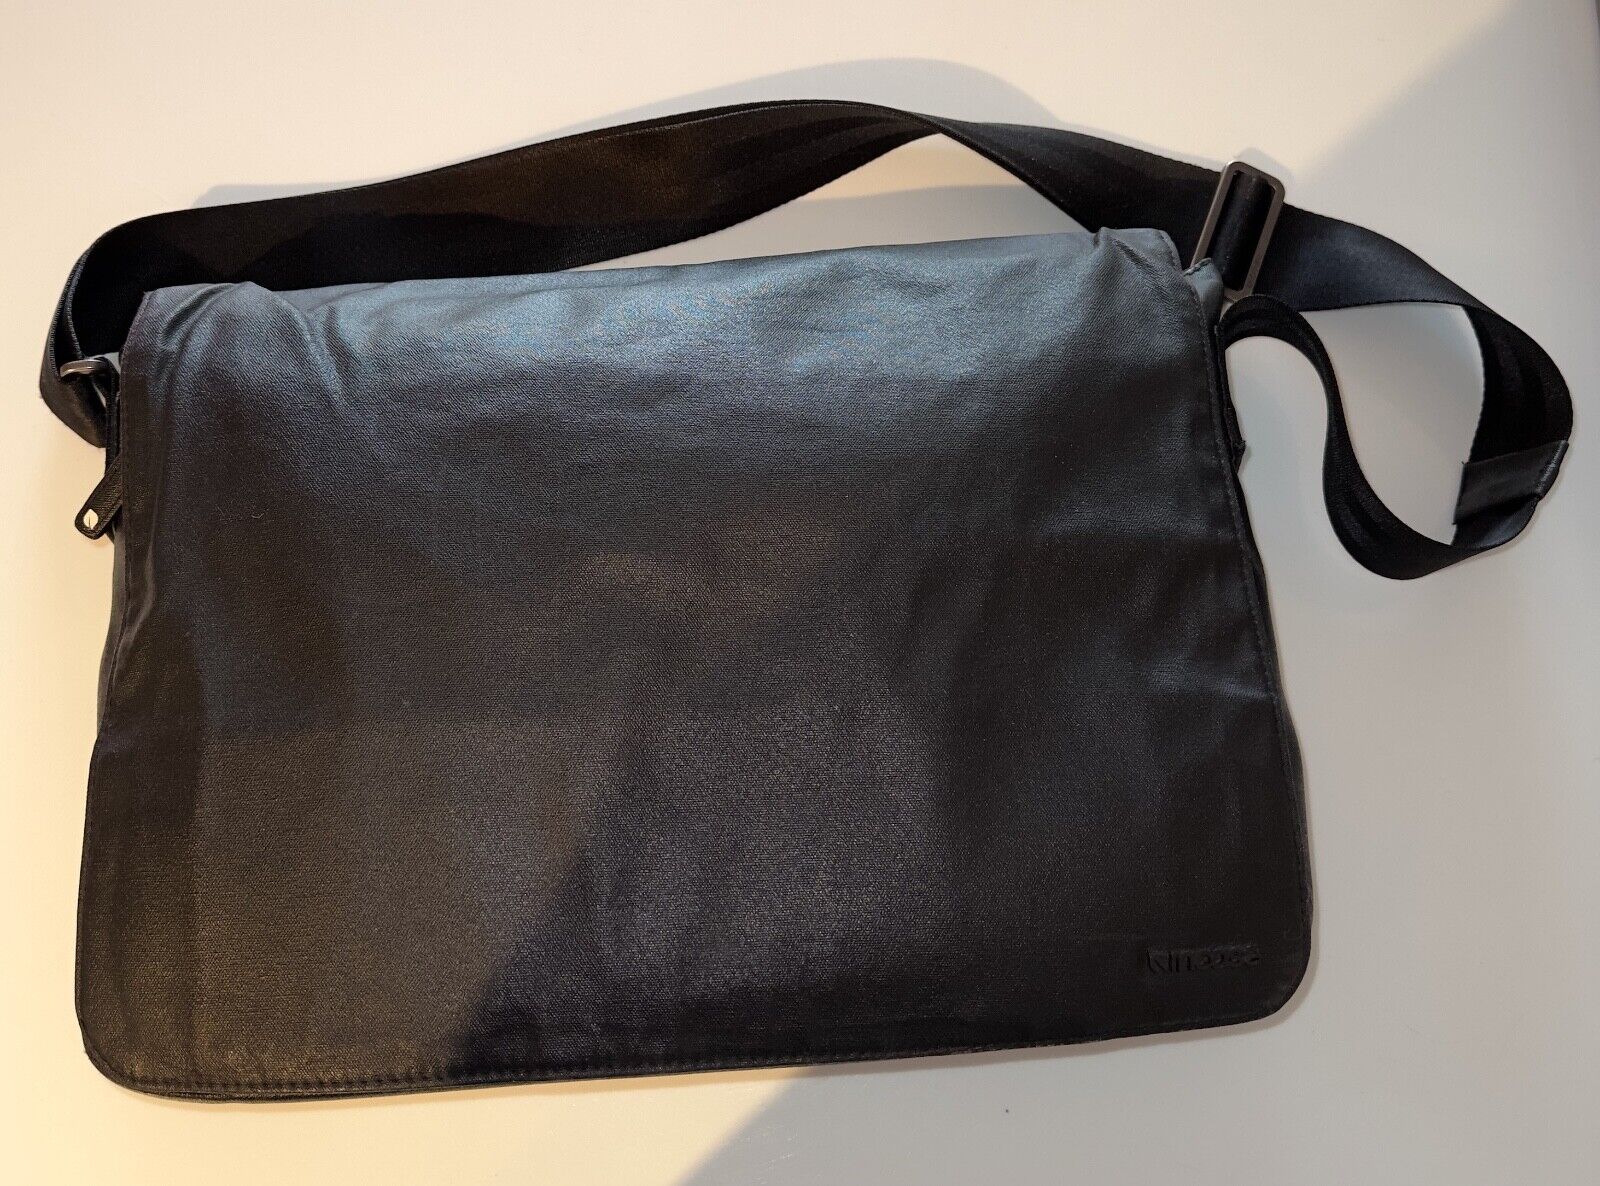 Incase Black Laptop Shoulder/Messenger Bag - Beautiful Condition